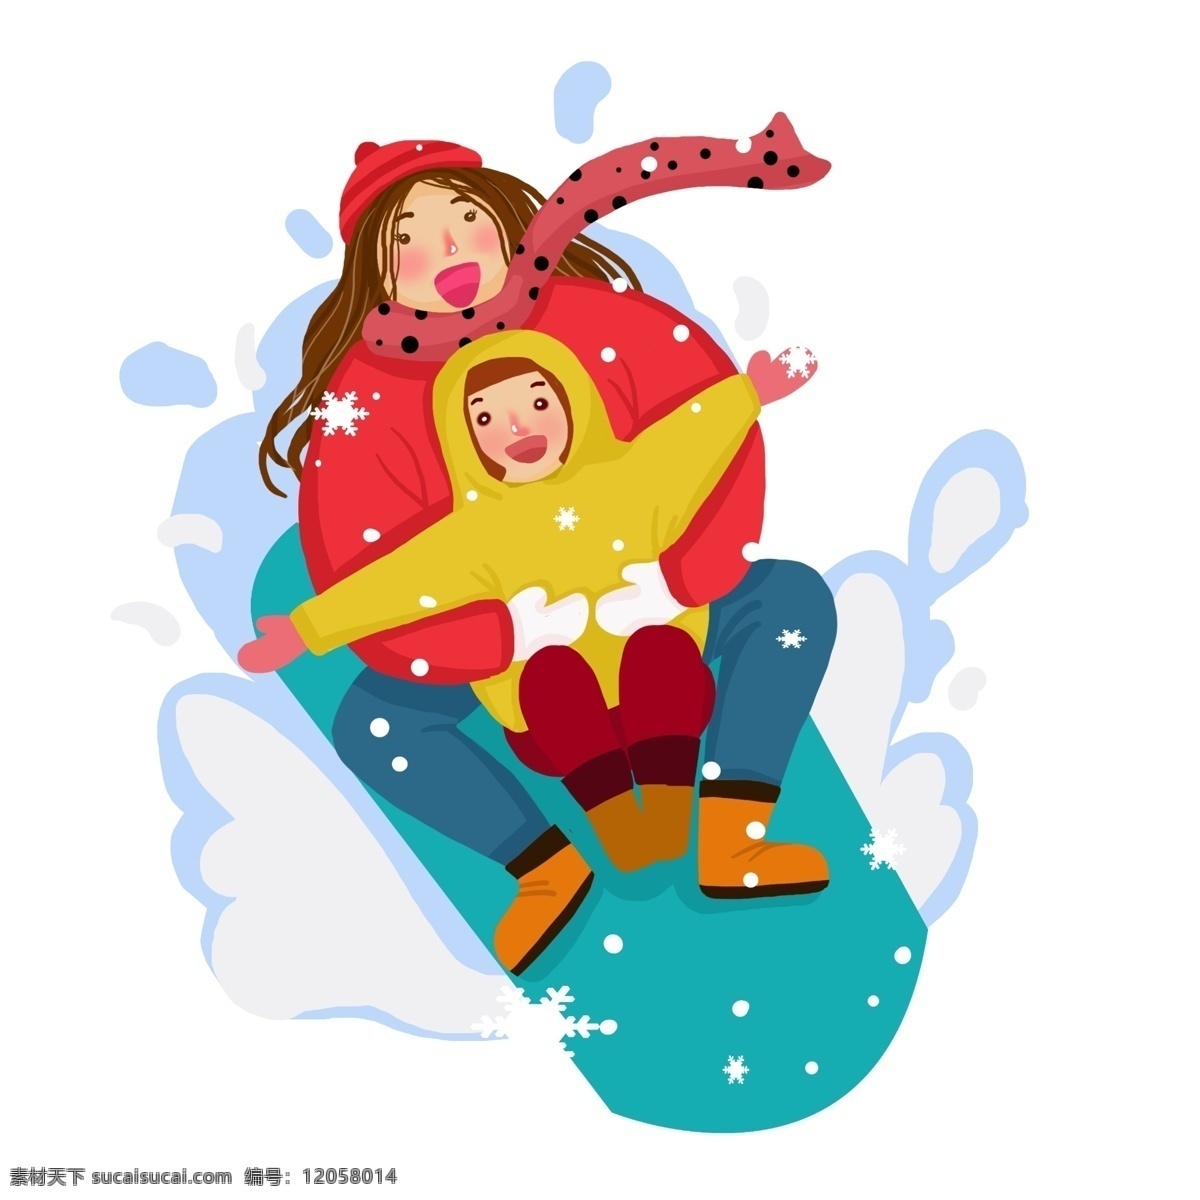 冬季 旅行 滑雪 小女孩 滑雪的小女孩 白色的雪花 漂亮的小女孩 玩耍的小女孩 人物 插画 蓝色的滑雪板